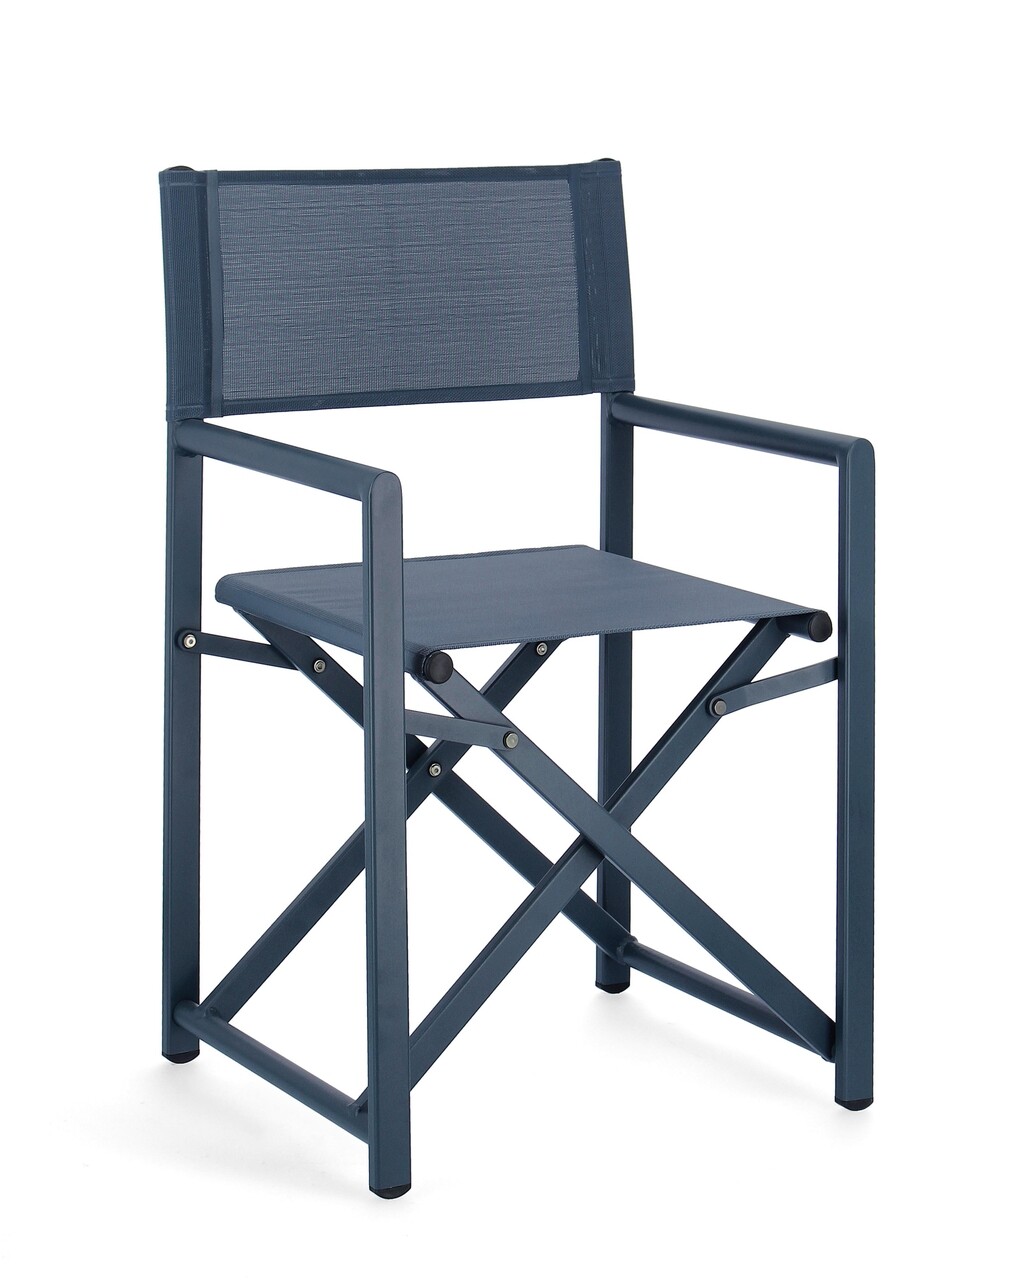 Taylor Összecsukható kerti szék, Bizzotto, 48 x 56 x 86 cm, alumínium/textilén 2x1, tengerkék